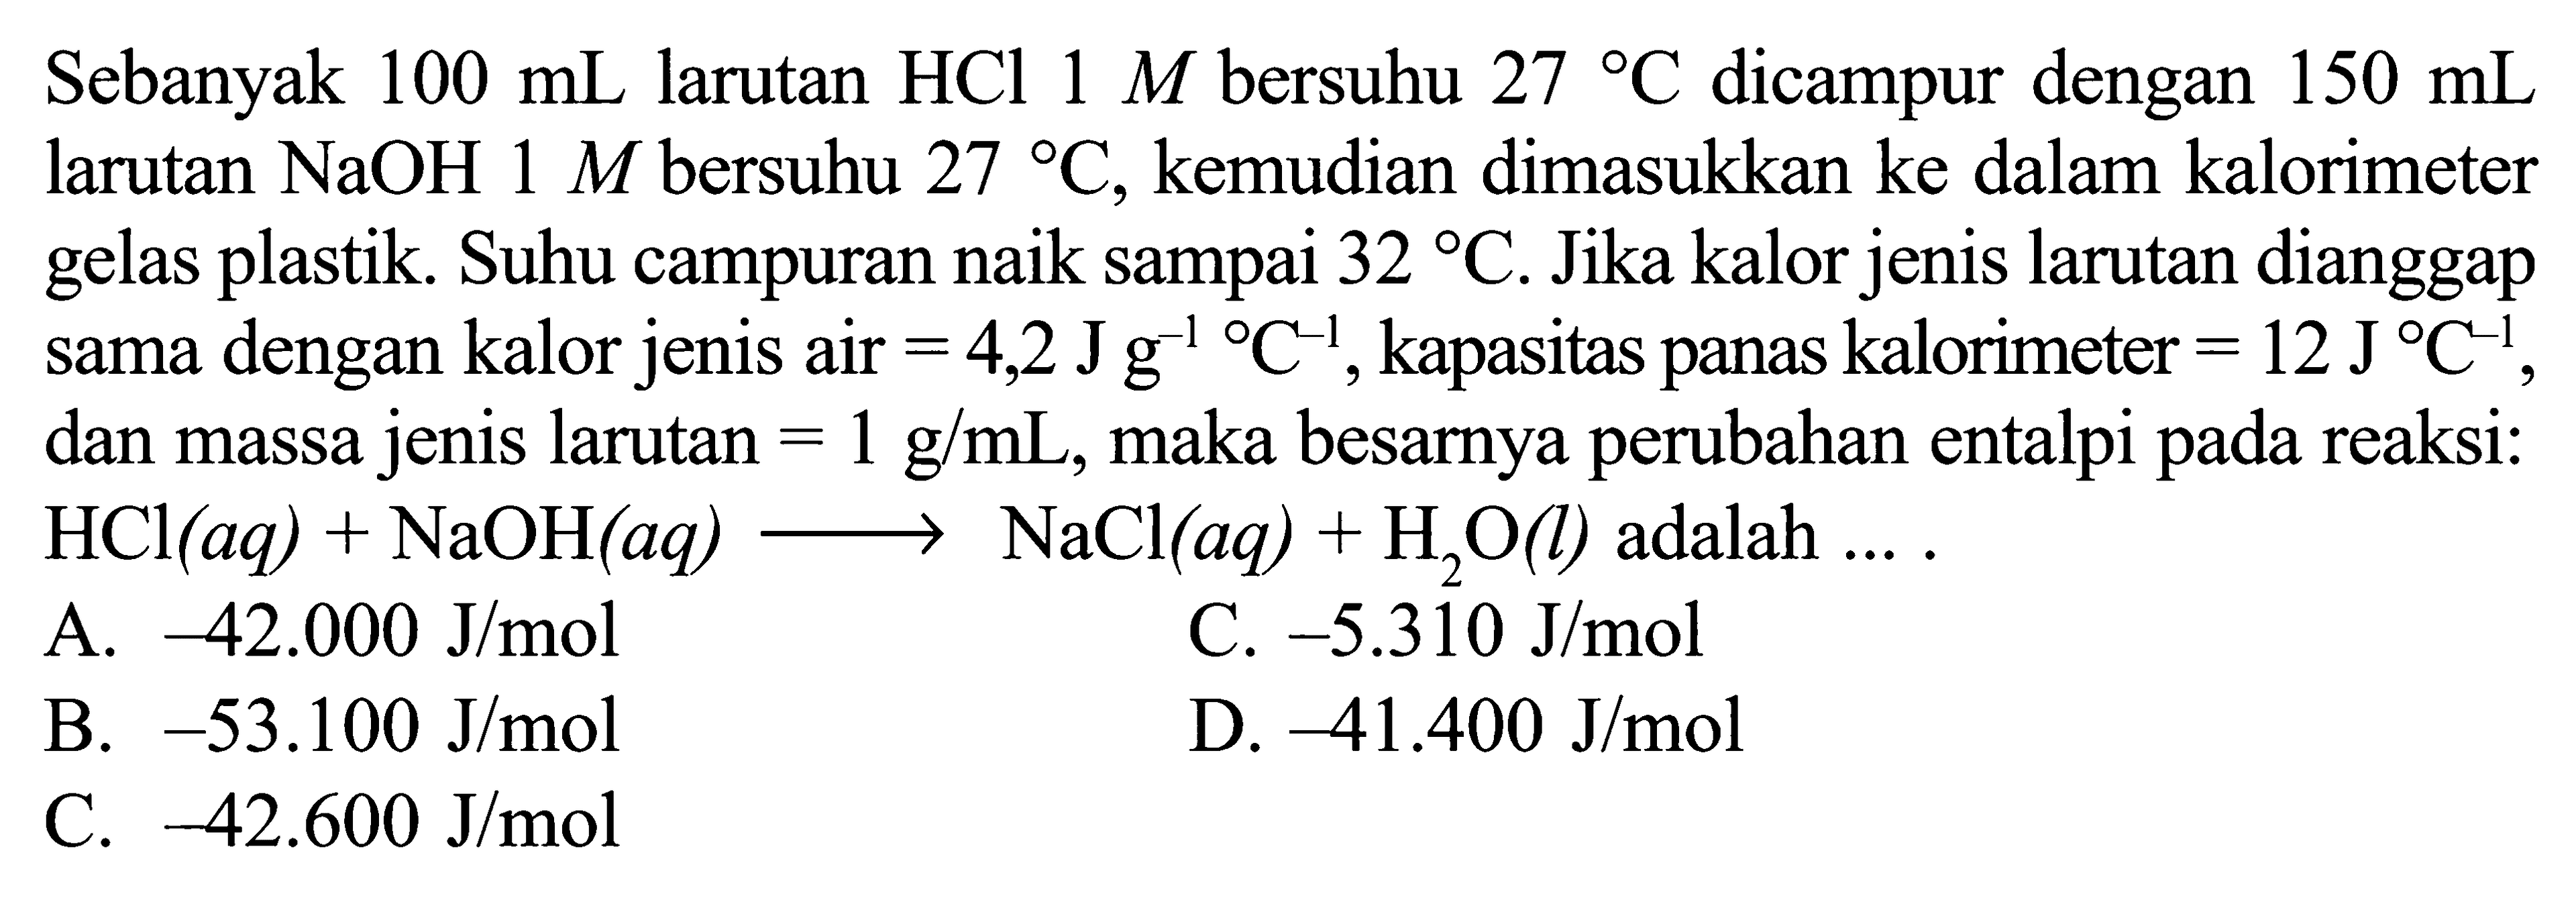 Sebanyak 100 mL larutan HCl 1 M bersuhu 27 C dicampur dengan 150 mL larutan NaOH 1 M bersuhu 27 C, kemudian dimasukkan ke dalam kalorimeter gelas plastik. Suhu campuran naik sampai 32 C. Jika kalor jenis larutan dianggap sama dengan kalor jenis air =4,2 Jg^-1/ C^-1, kapasitas panas kalorimeter =12 J/ C^-1, dan massa jenis larutan =1 g/mL, maka besarnya perubahan entalpi pada reaksi: HCl(aq)+NaOH(aq) -> NaCl(aq)+H2O(l) adalah.... 